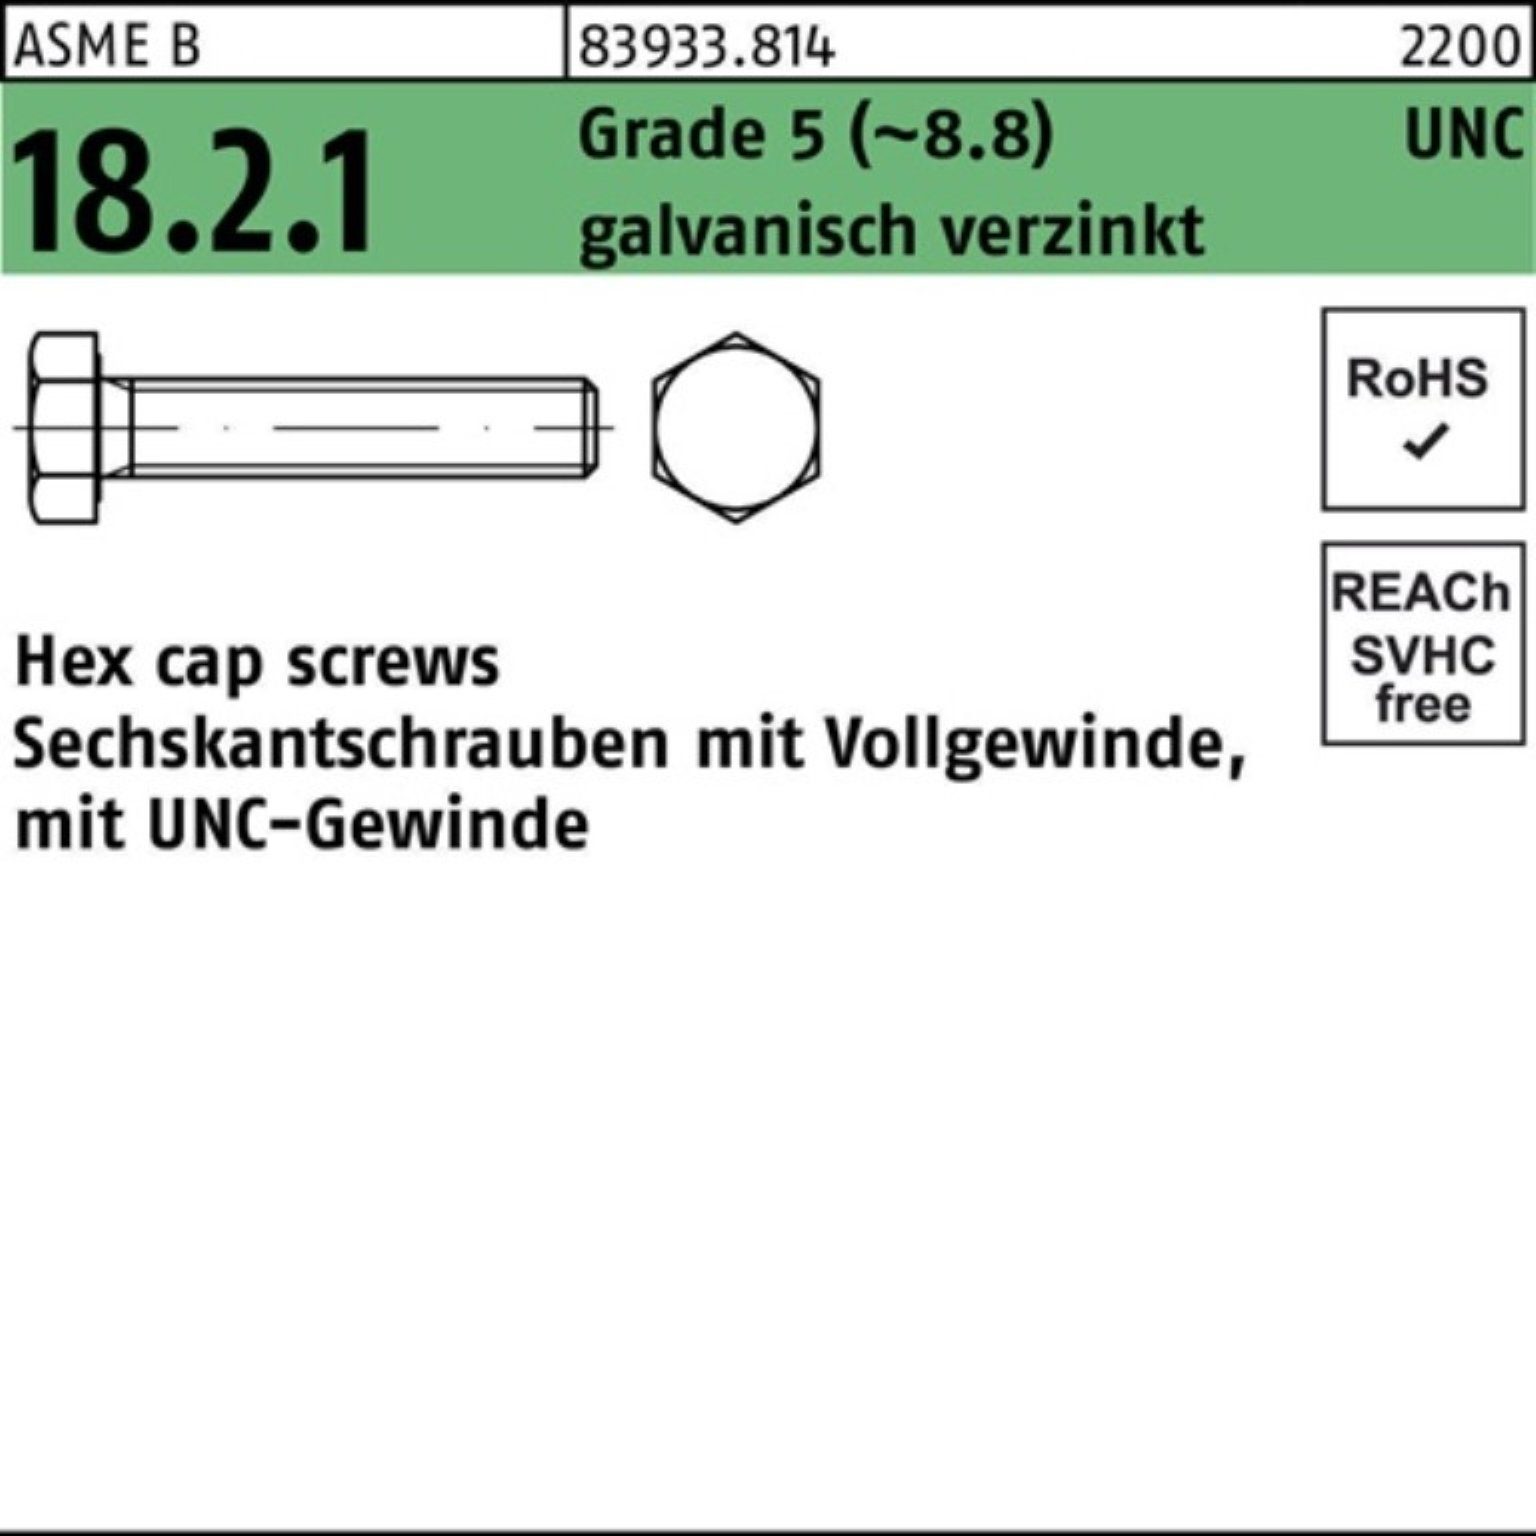 Reyher Sechskantschraube 100er Pack Sechskantschraube R 83933 UNC VG 3/8x5/8 Grade 5 (8.8) gal